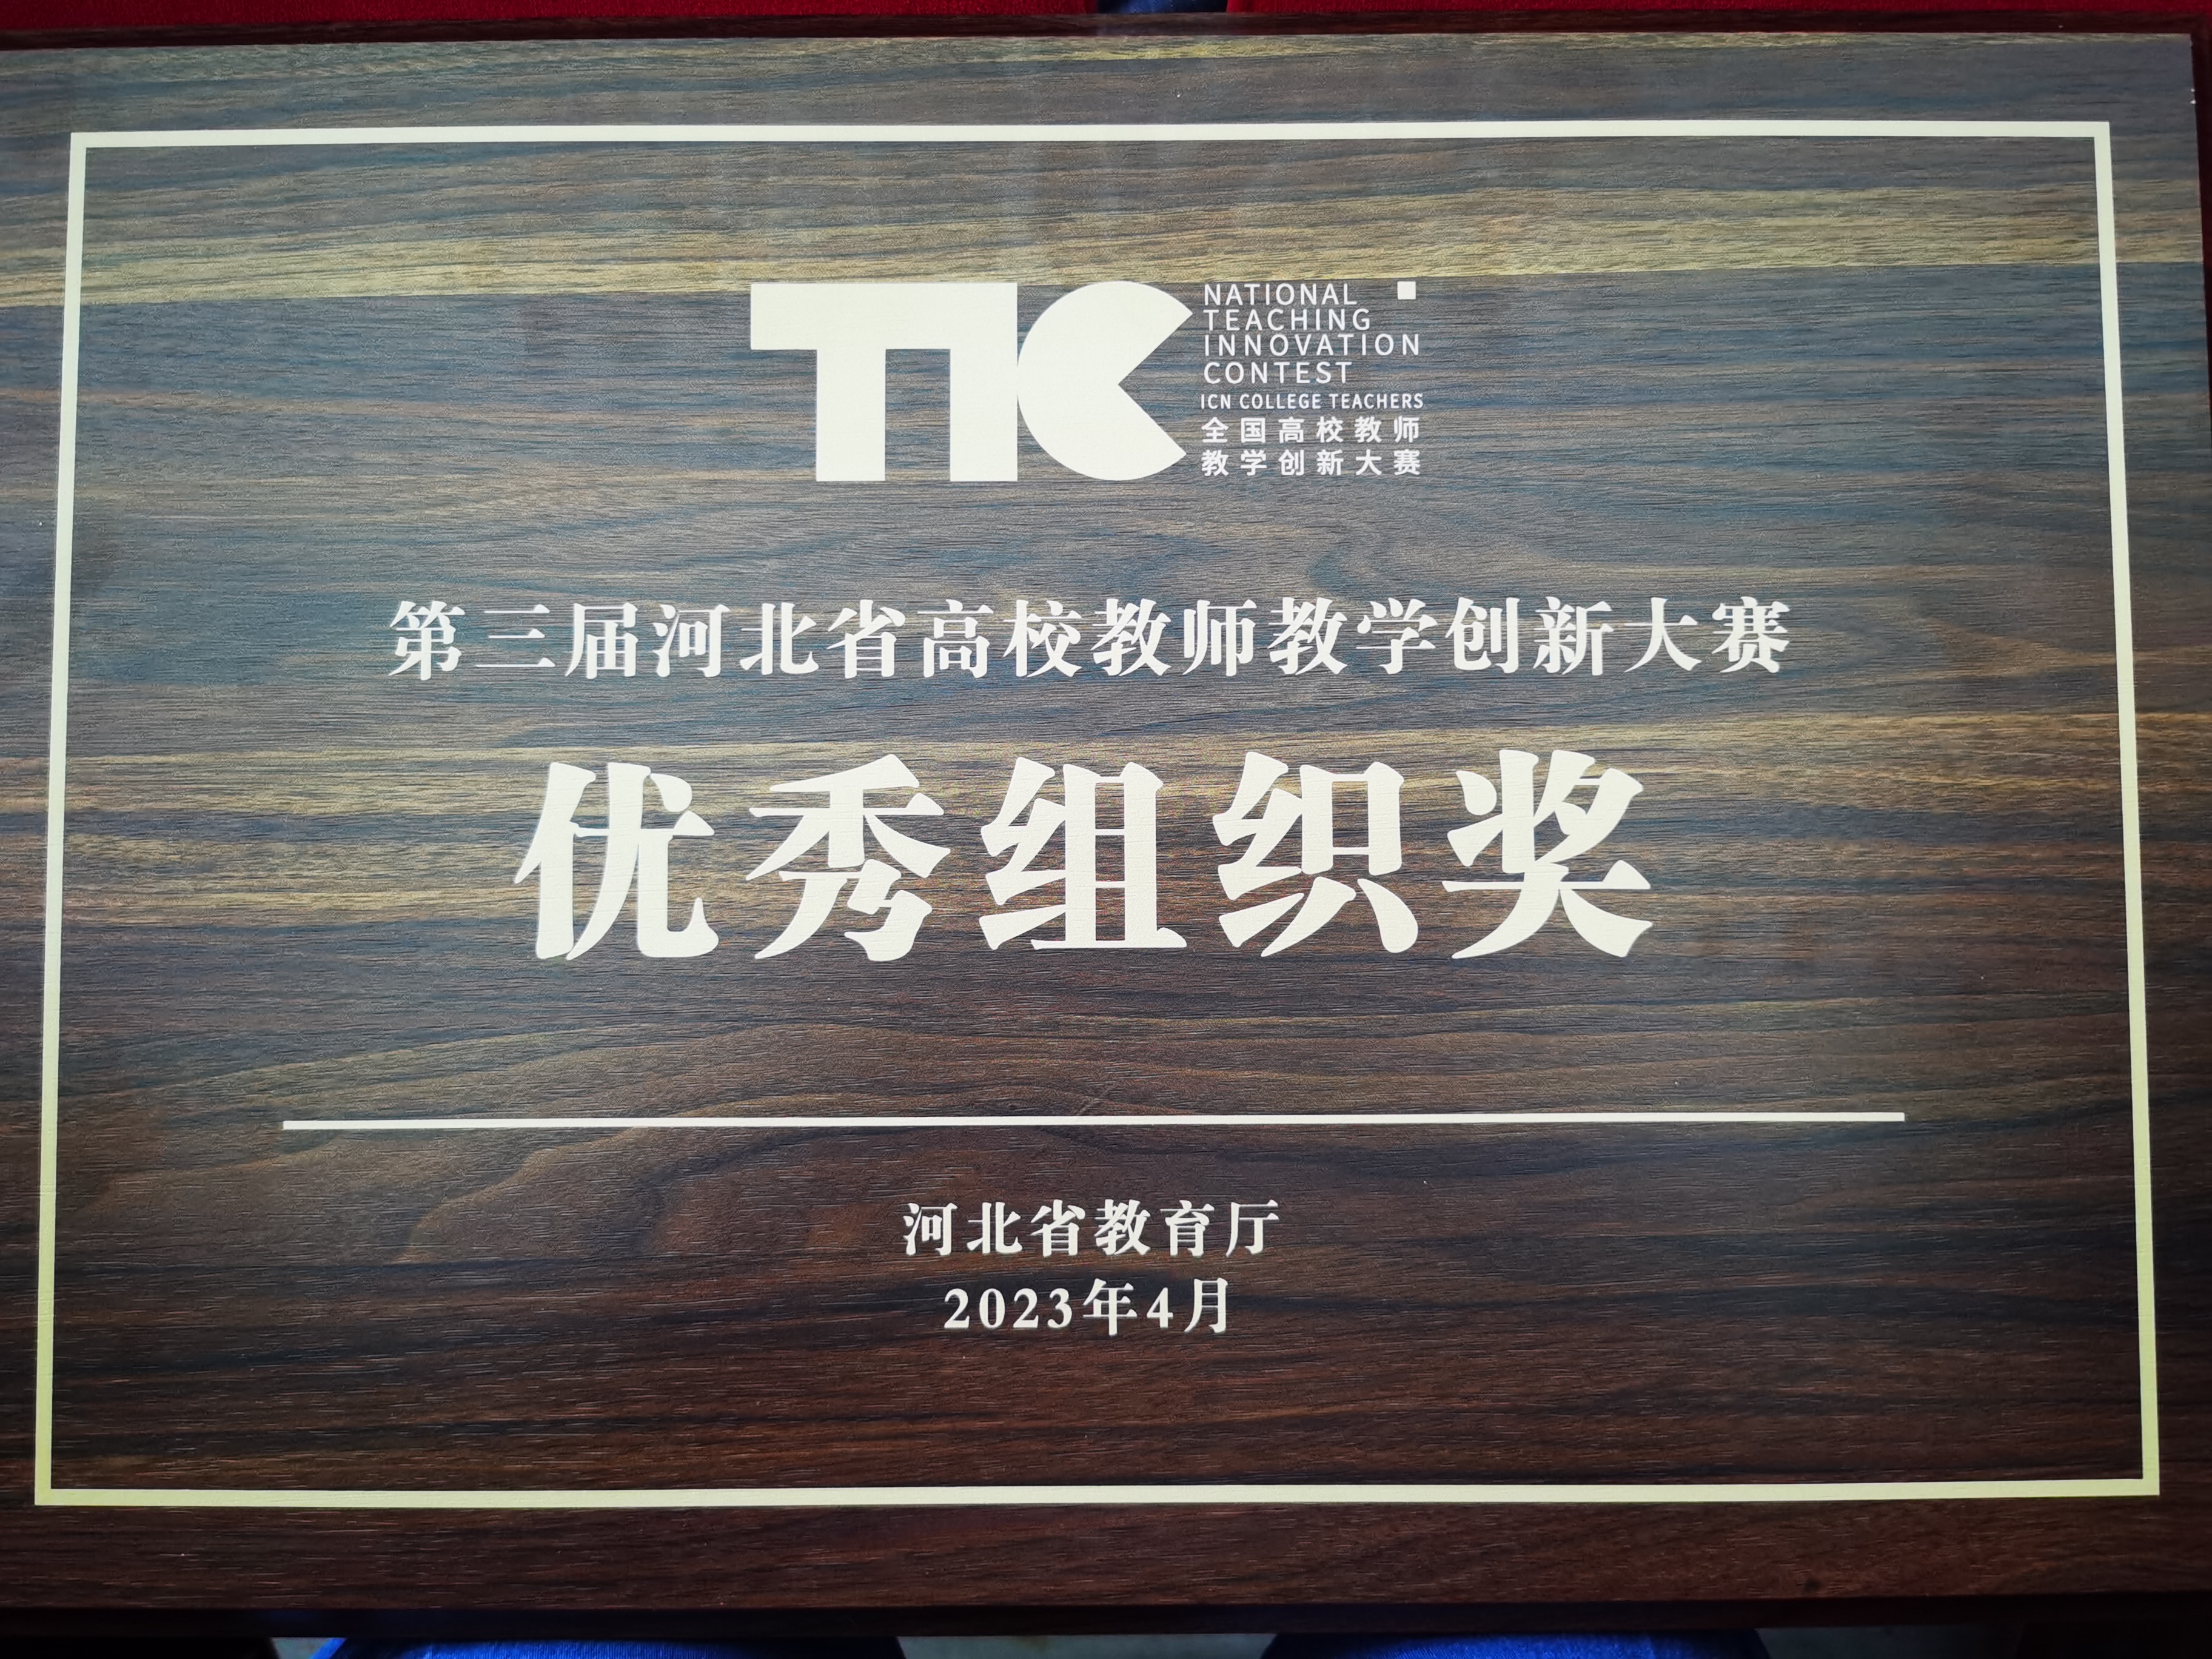 第三届河北省高校教师教学创新大赛优秀组织奖牌匾.jpg